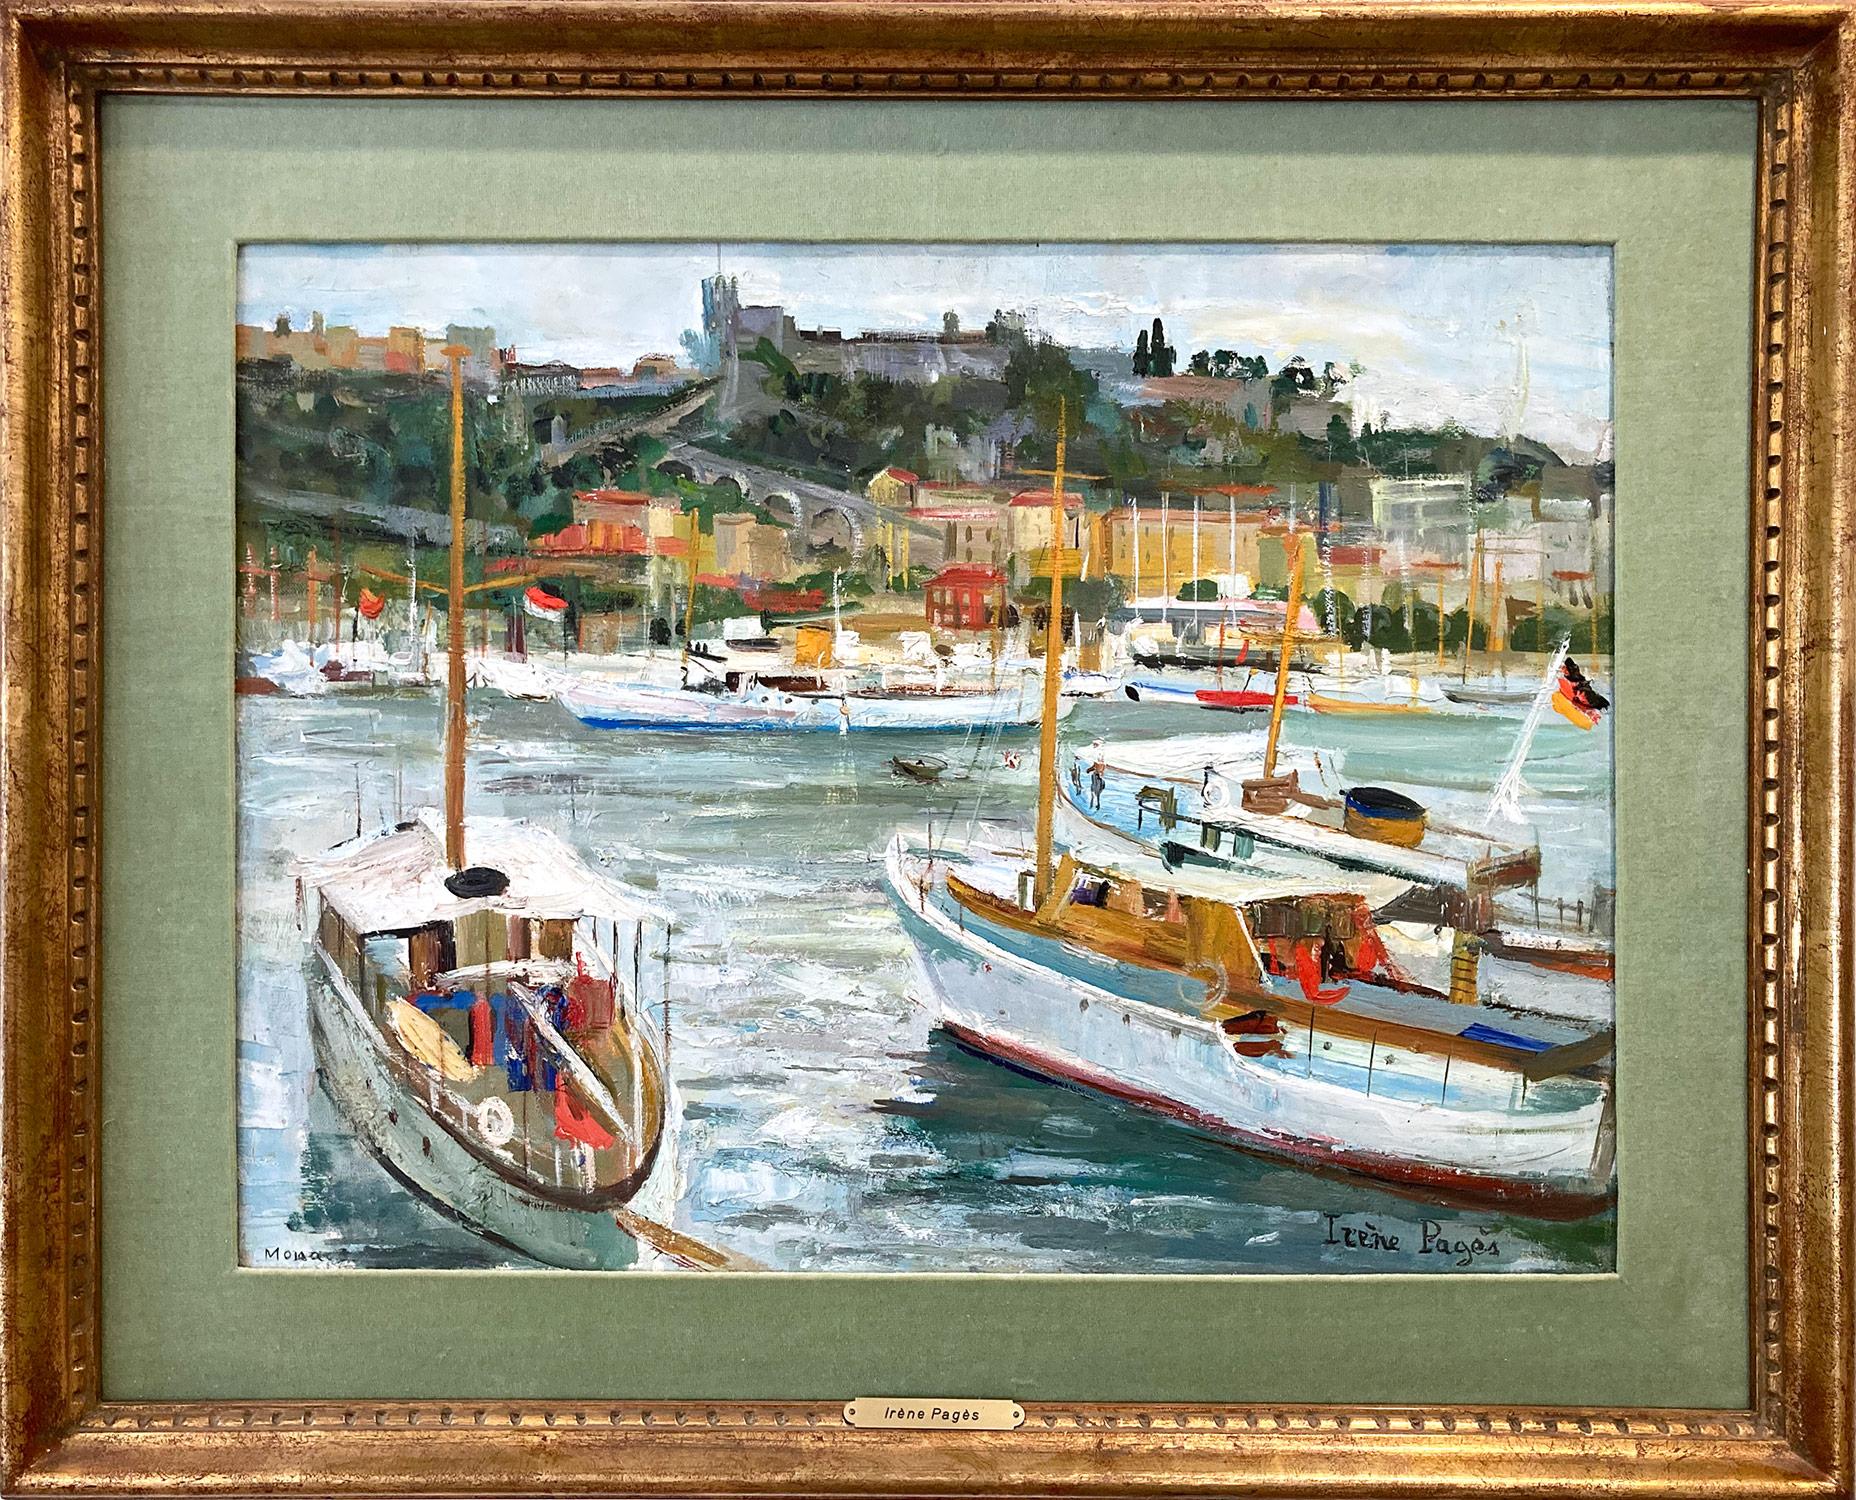 Landscape Painting Irene Pages - "Monaco" Peinture impressionniste à l'huile sur toile - Scène maritime du port de Cote D'azur